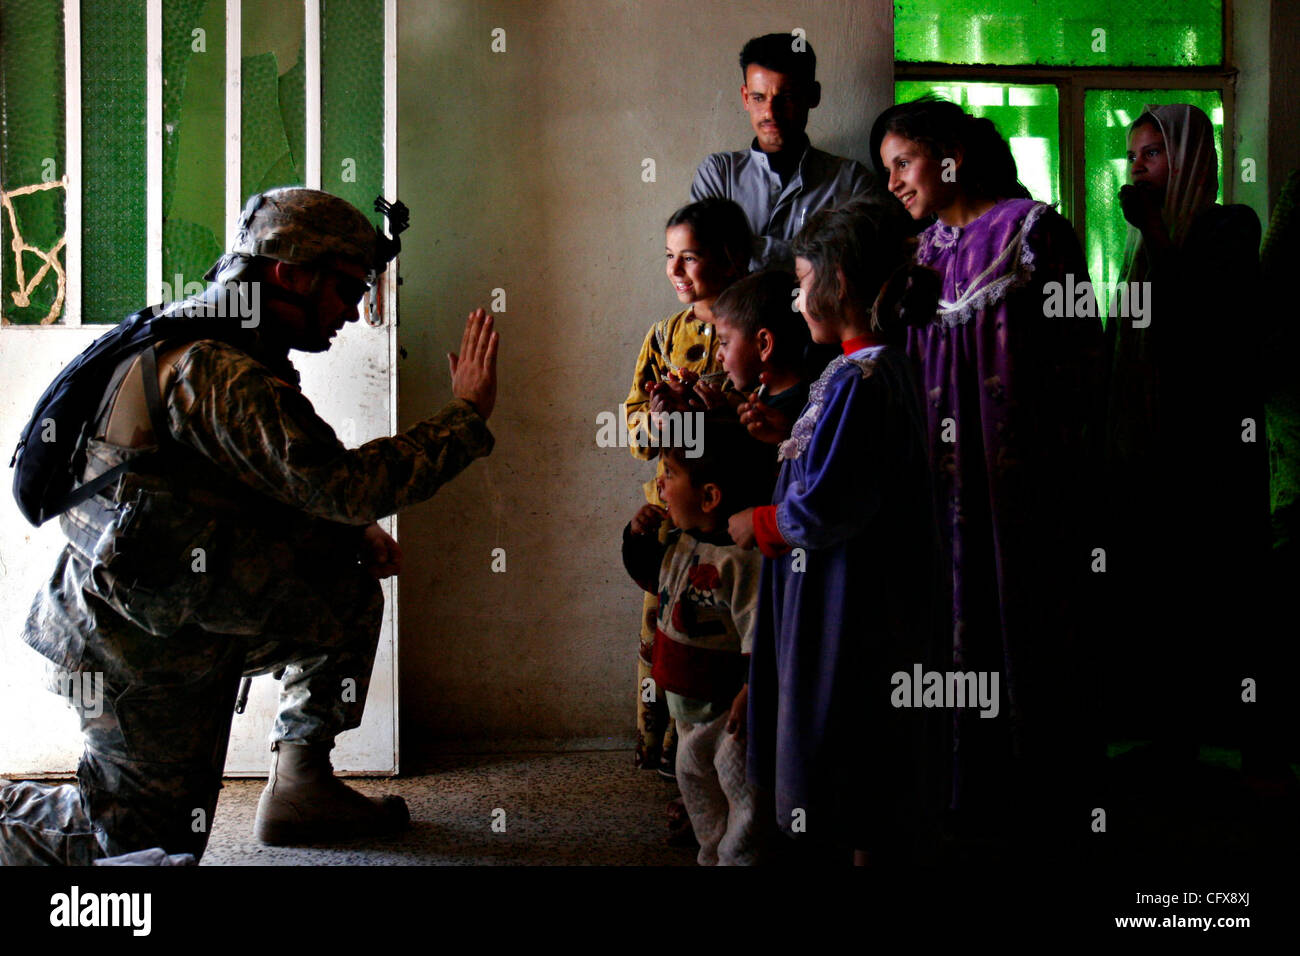 29 Mar 2007 - Shakarah, Diyala, l'IRAQ - Sgt. JESSIE RHODES, d'Orange, des entretiens avec une famille comme les autres soldats rechercher leur maison près de la Base de patrouille de K-Wal dans Shacarat, l'Iraq, le mardi 17 mars 2007. Des soldats de la première division de cavalerie Ft. Capot et un groupe de soldats de l'armée irakienne a loué un trois étages hou Banque D'Images